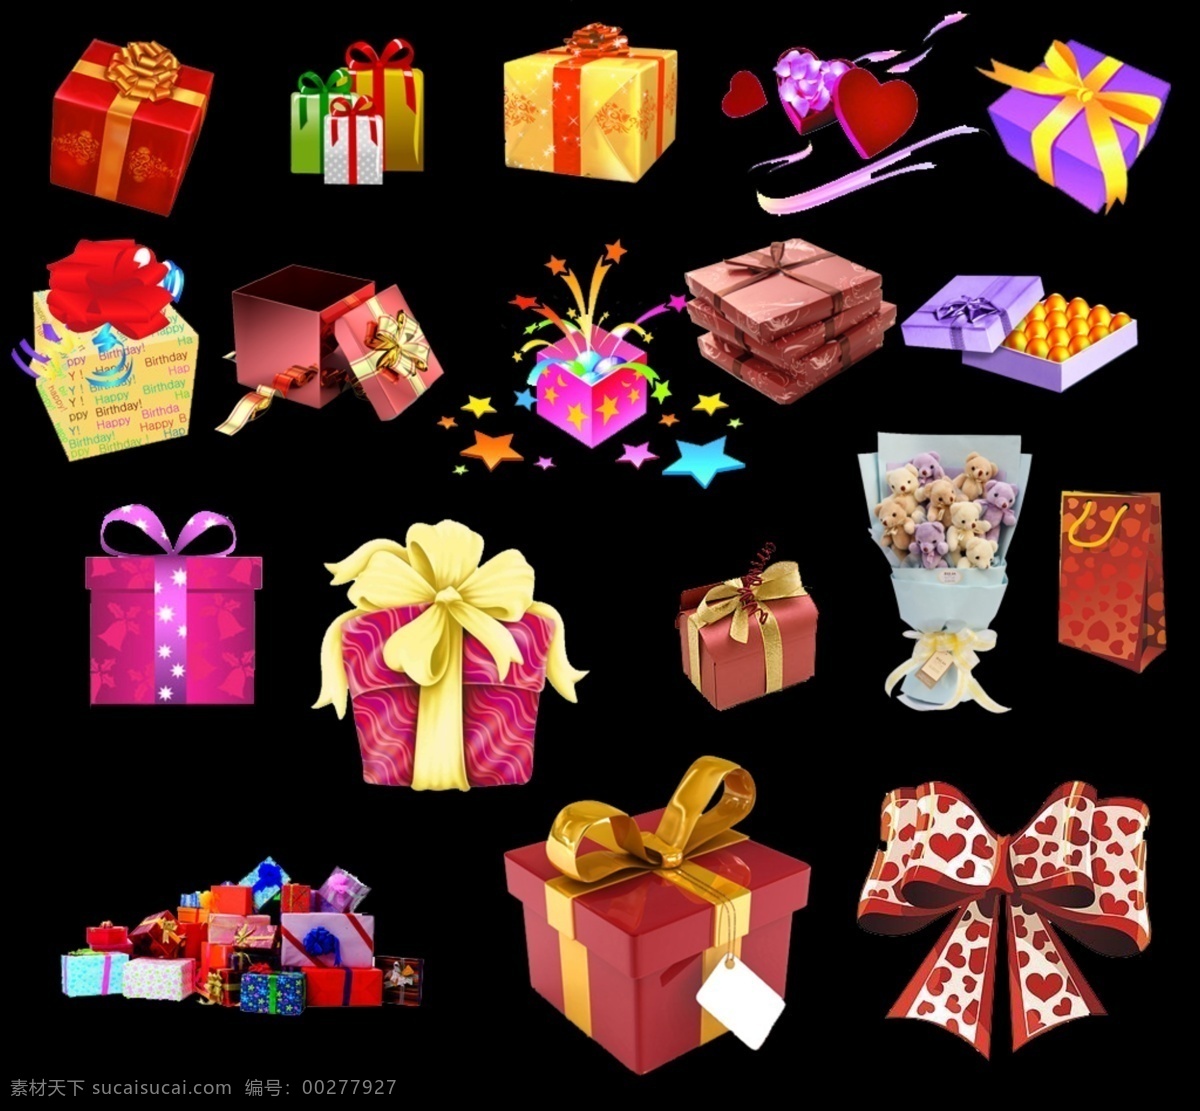 礼物盒 礼物 节日礼物 蝴蝶结 圣诞礼物 新年礼物 生日礼物 节日素材 源文件